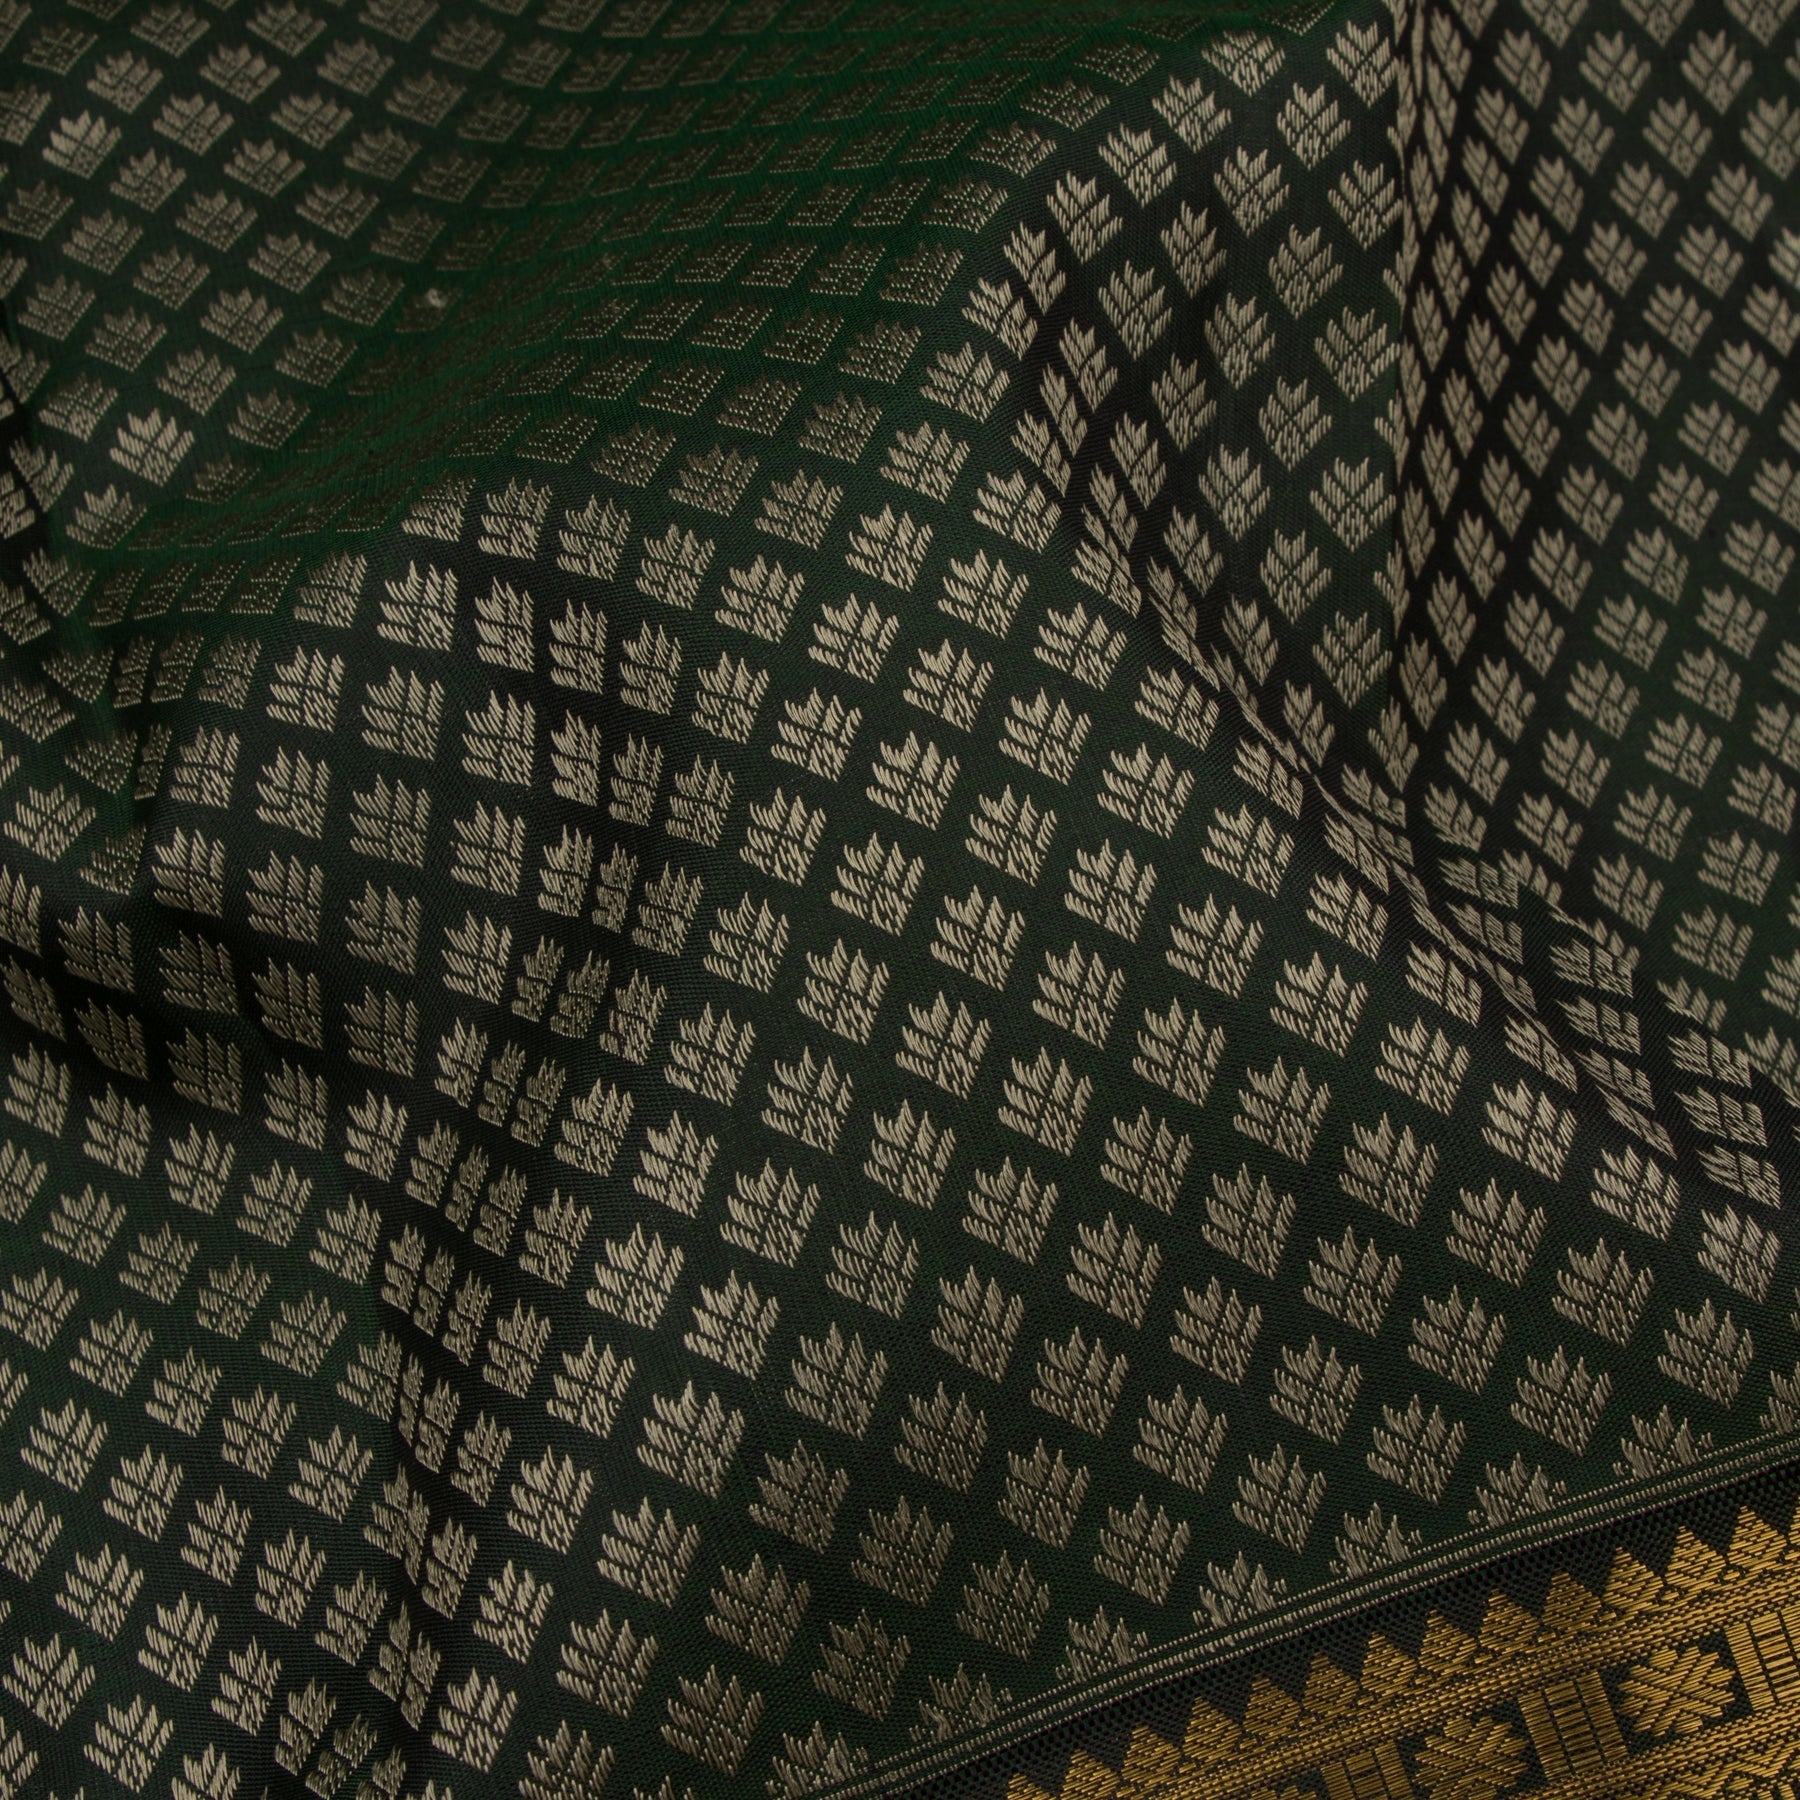 Kanakavalli Kanjivaram Silk Sari 23-599-HS001-00731 - Fabric View